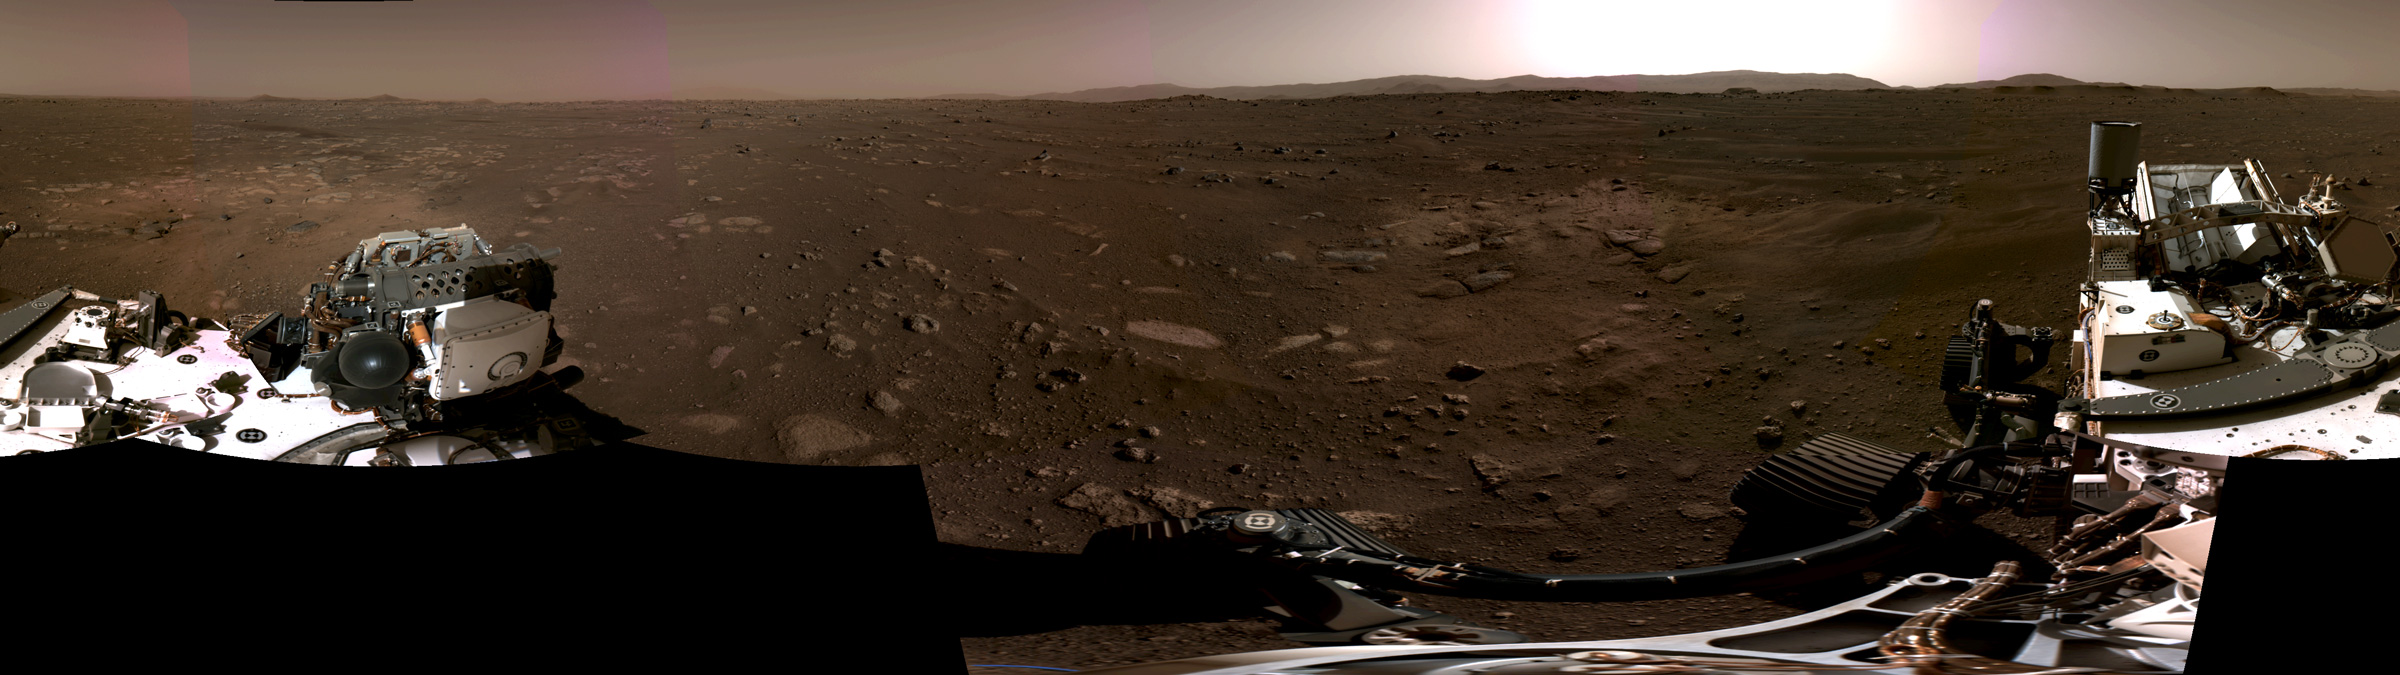 Mars panorama and parts of NASA's Perseverance rover